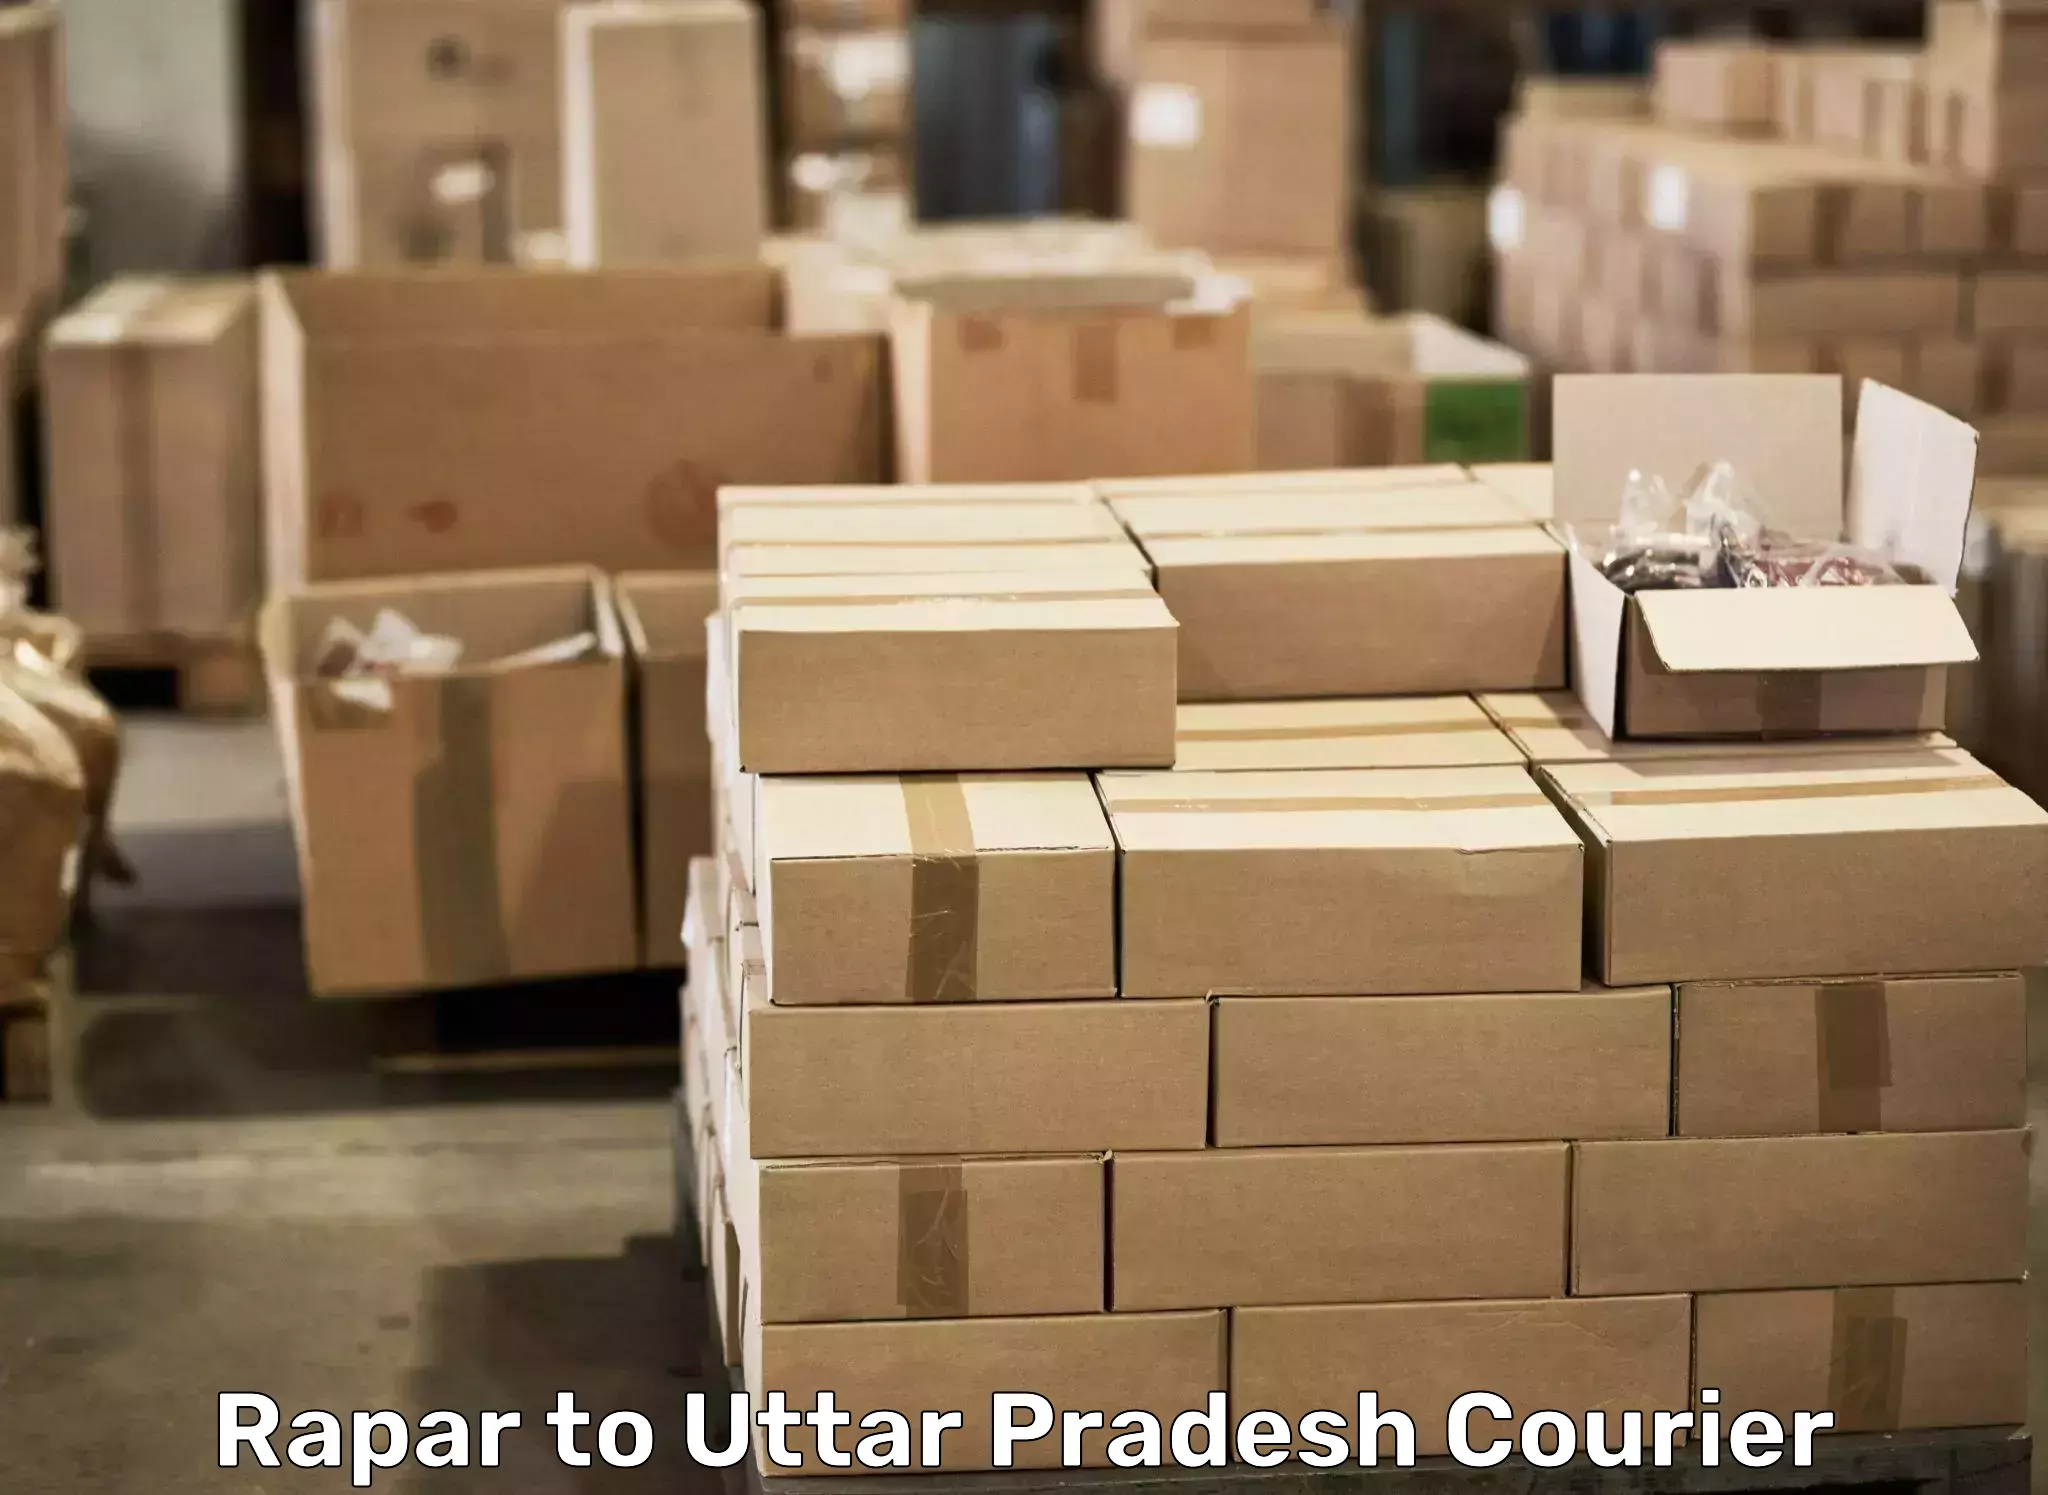 Furniture transport solutions Rapar to Moradabad